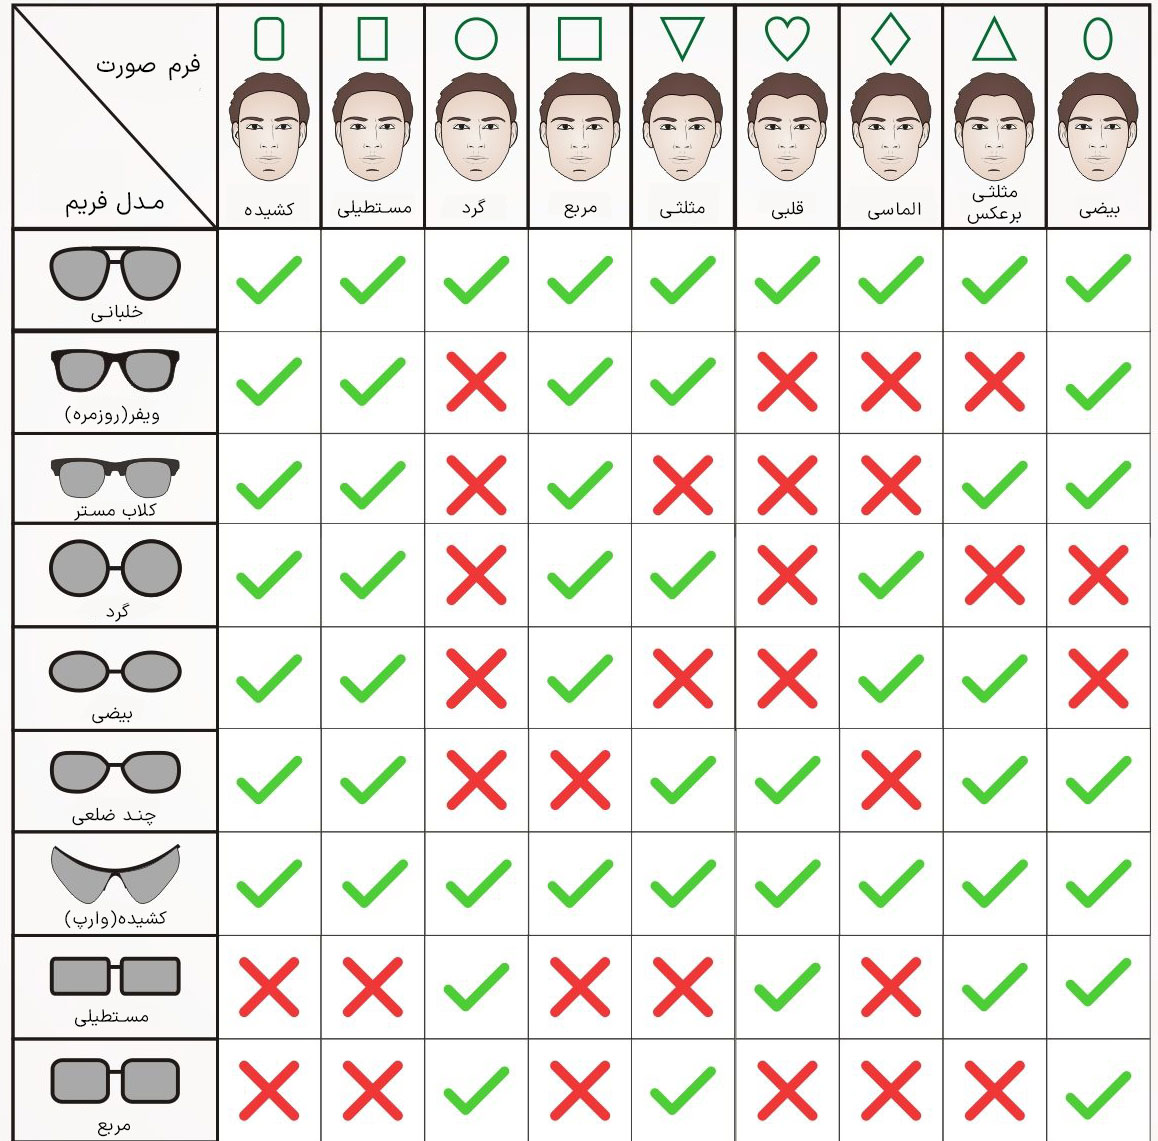 عینک ماسب برای انواع فرم صورت